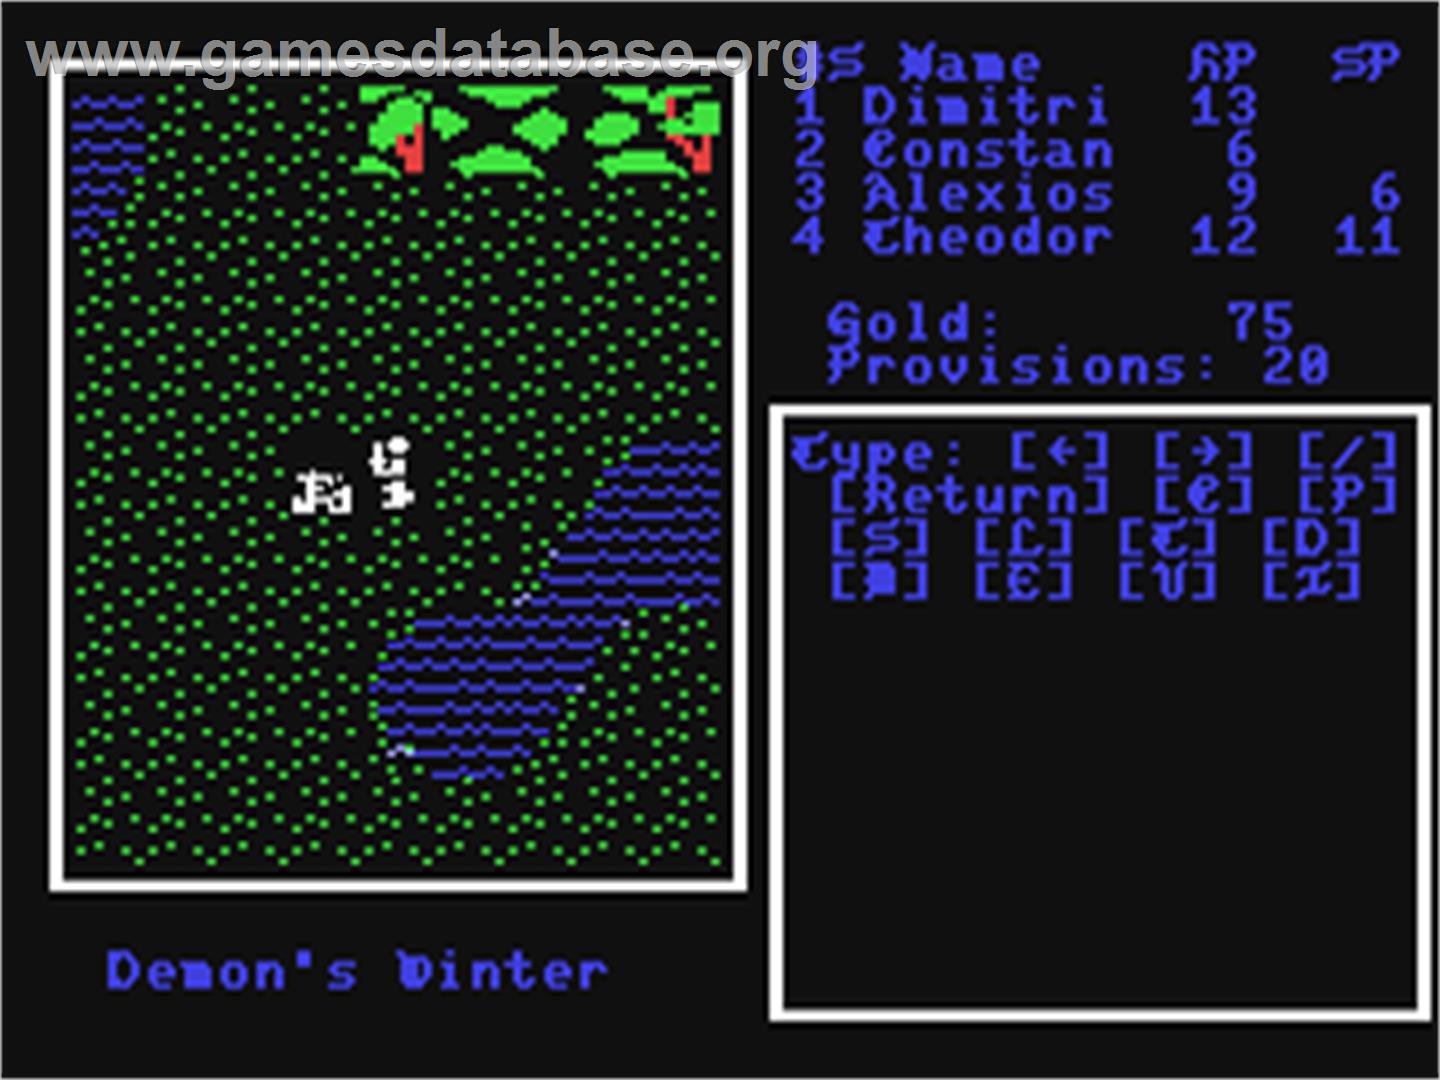 Demon's Winter - Commodore 64 - Artwork - In Game